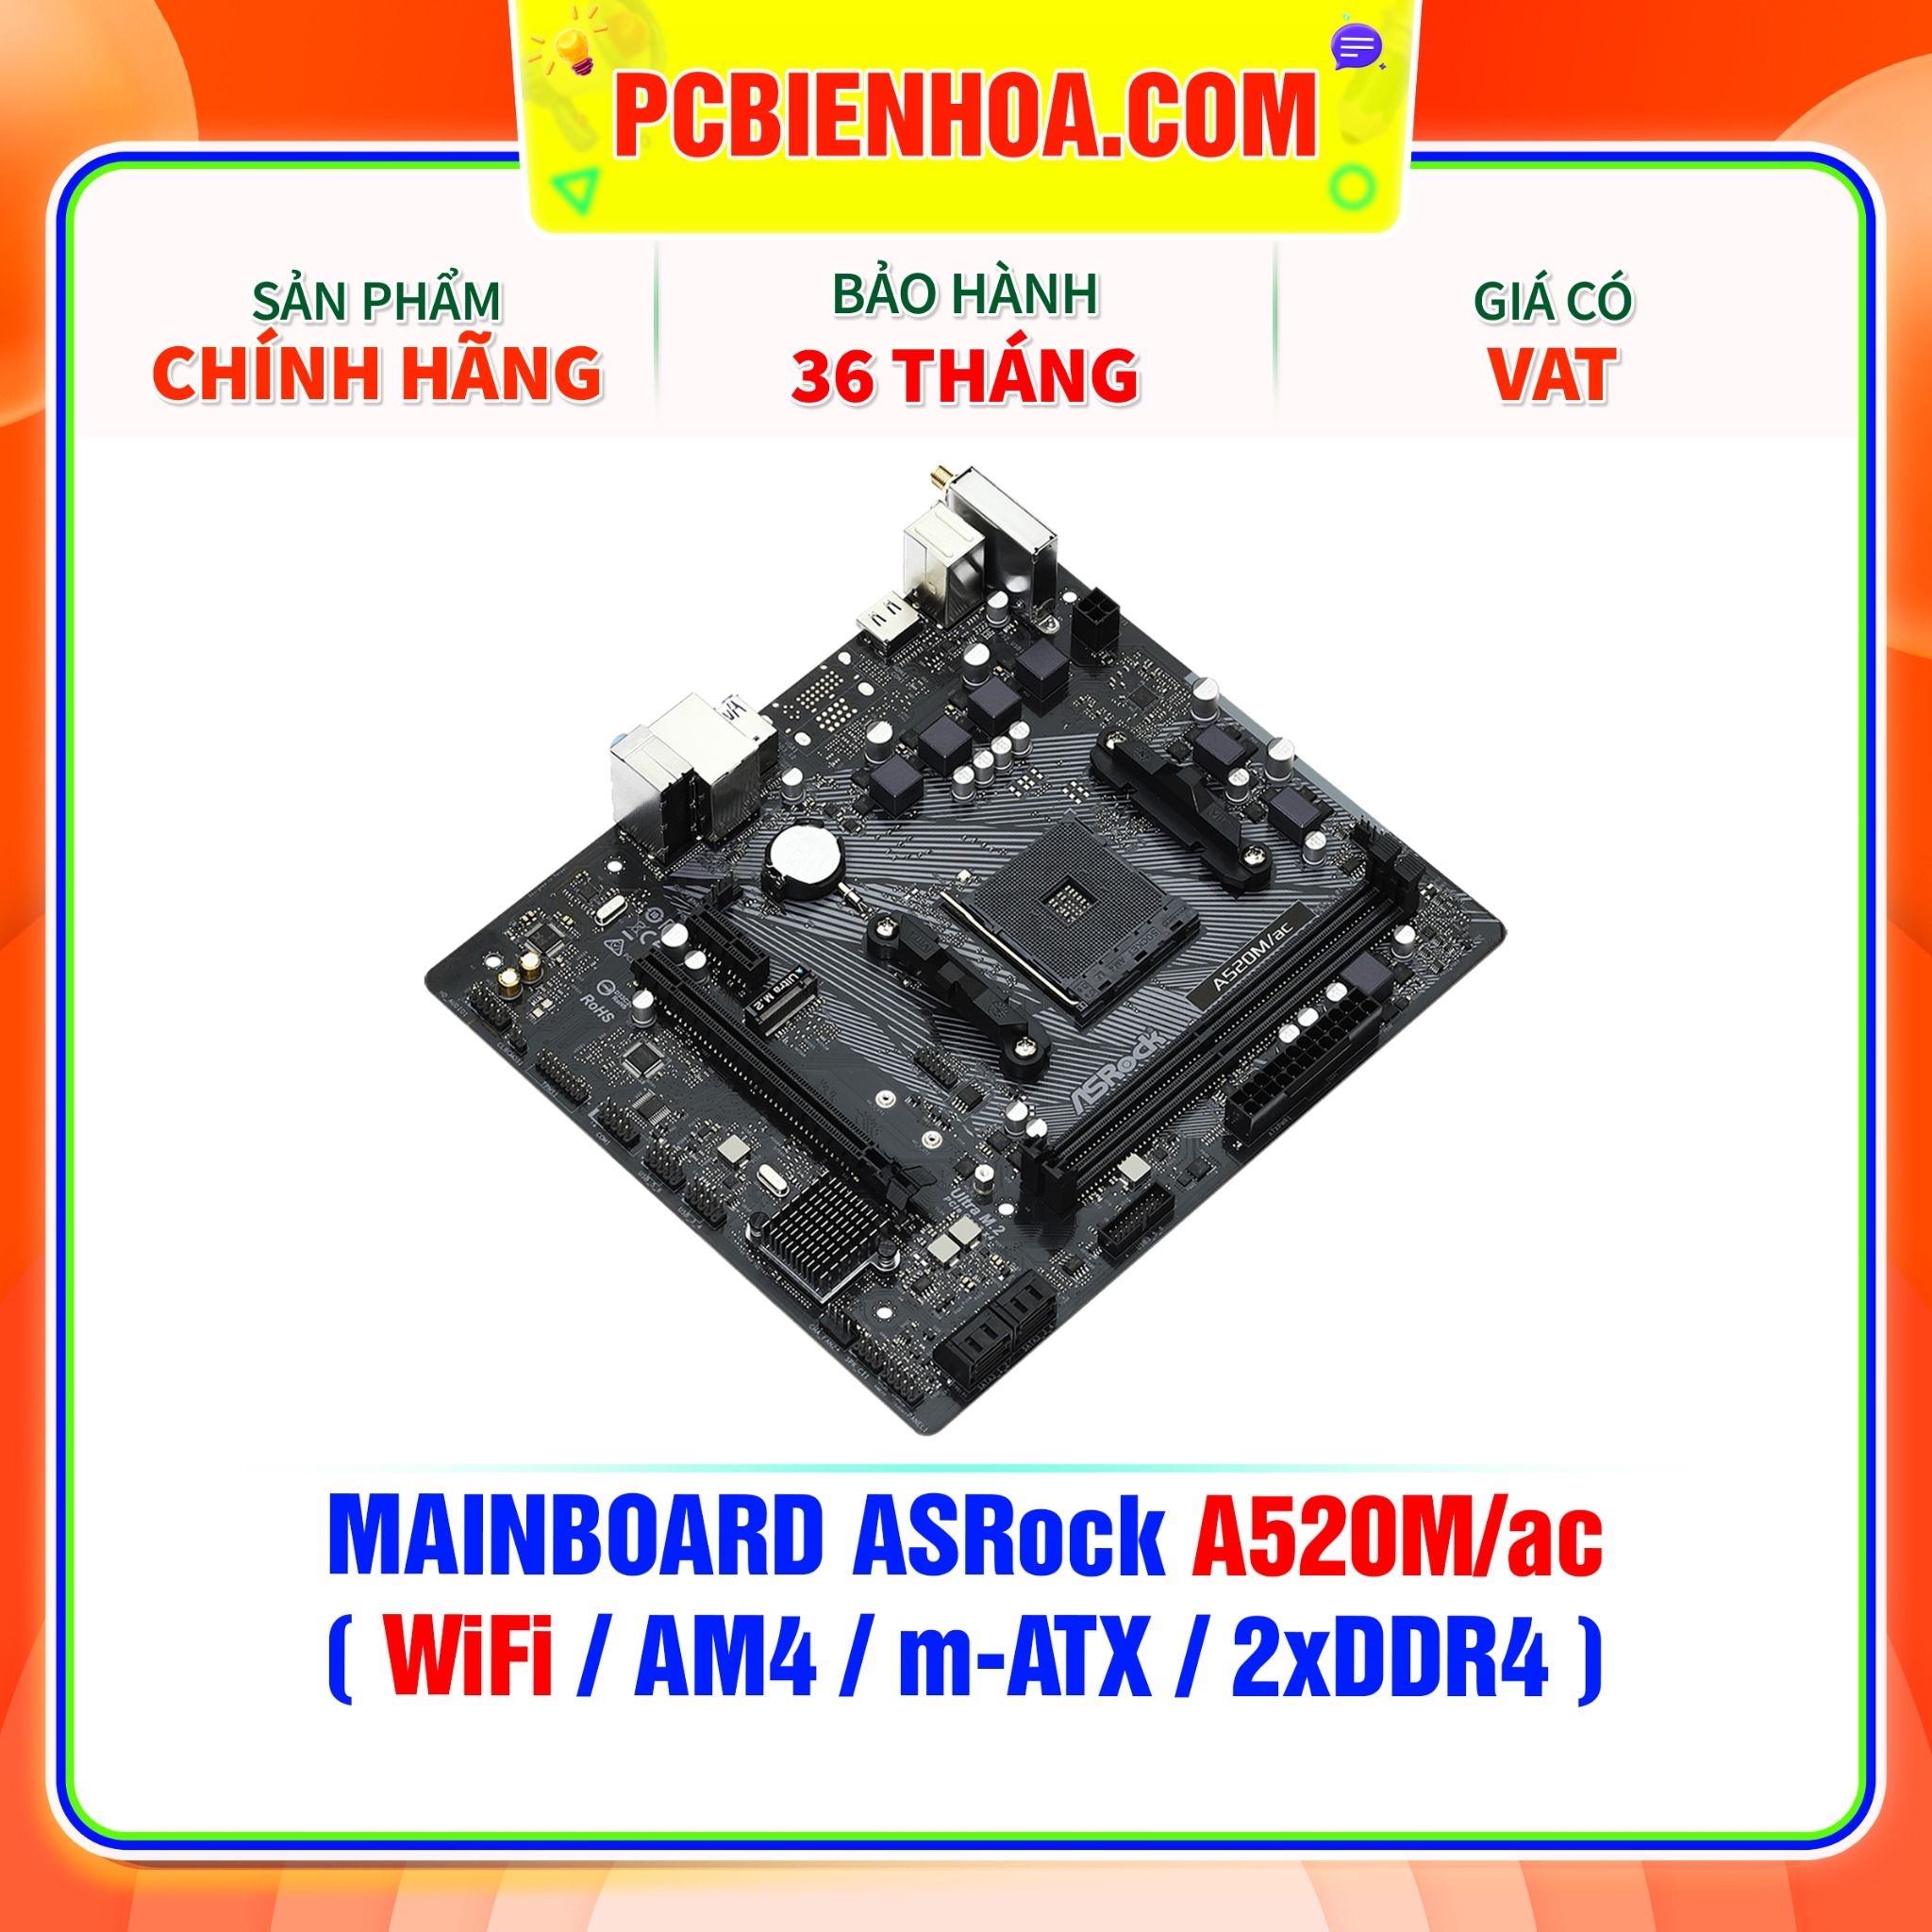  MAINBOARD ASRock A520M/ac ( WiFi / AM4 / m-ATX / 2xDDR4 ) 